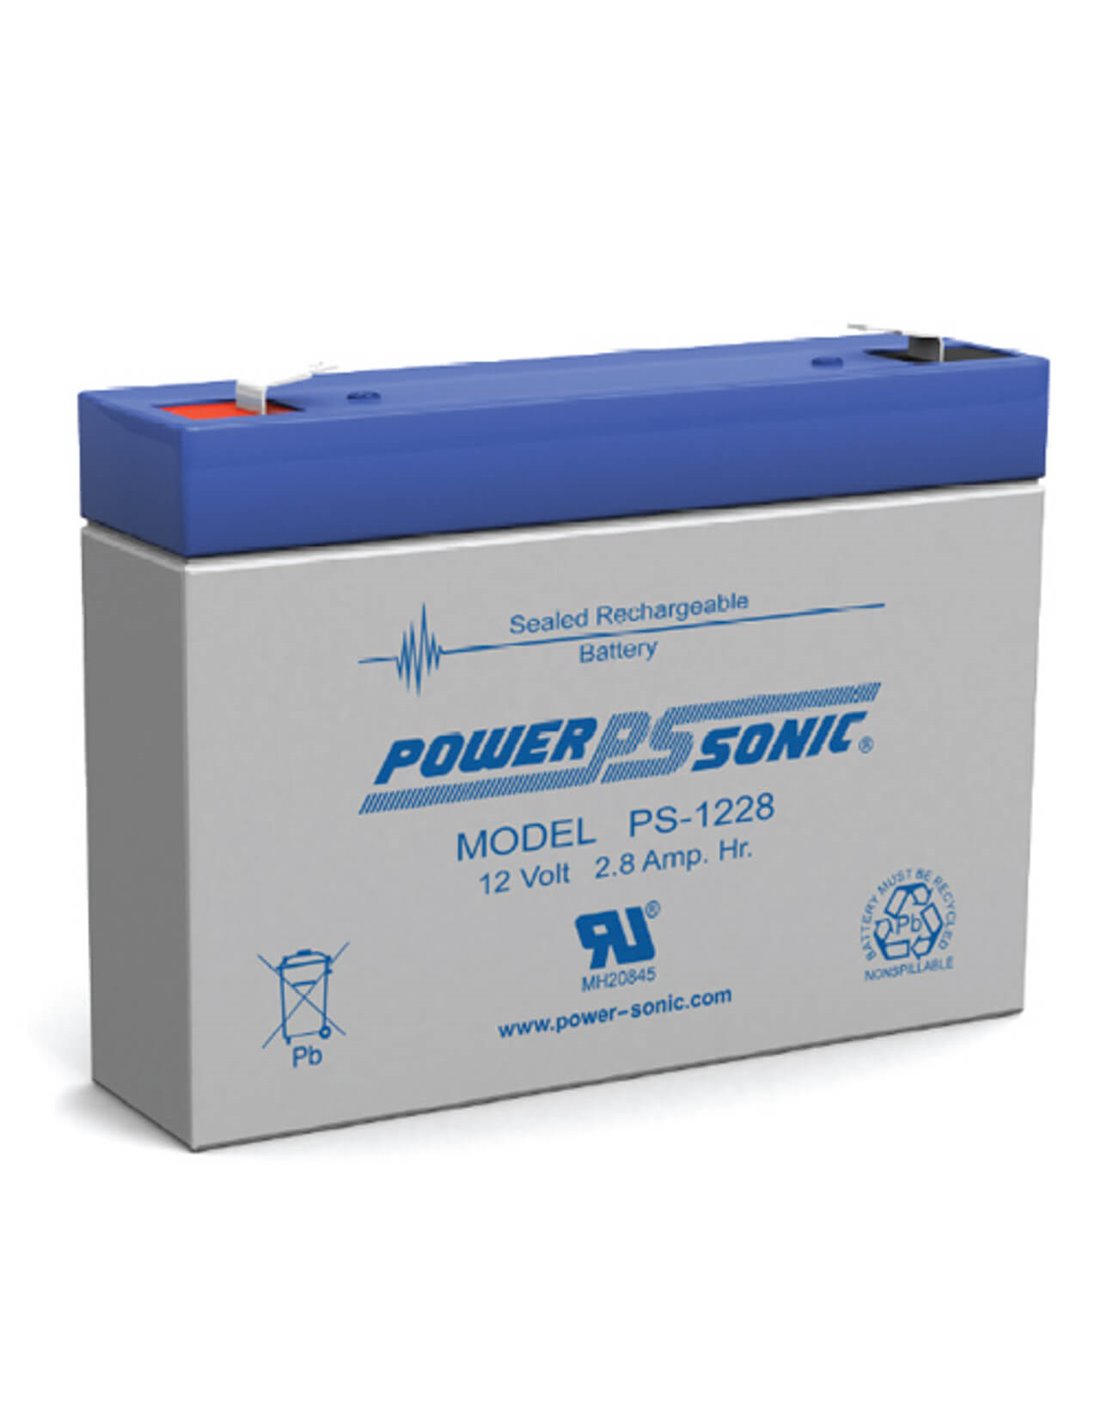 12 volt 2.8 amp hour sealed lead acid battery